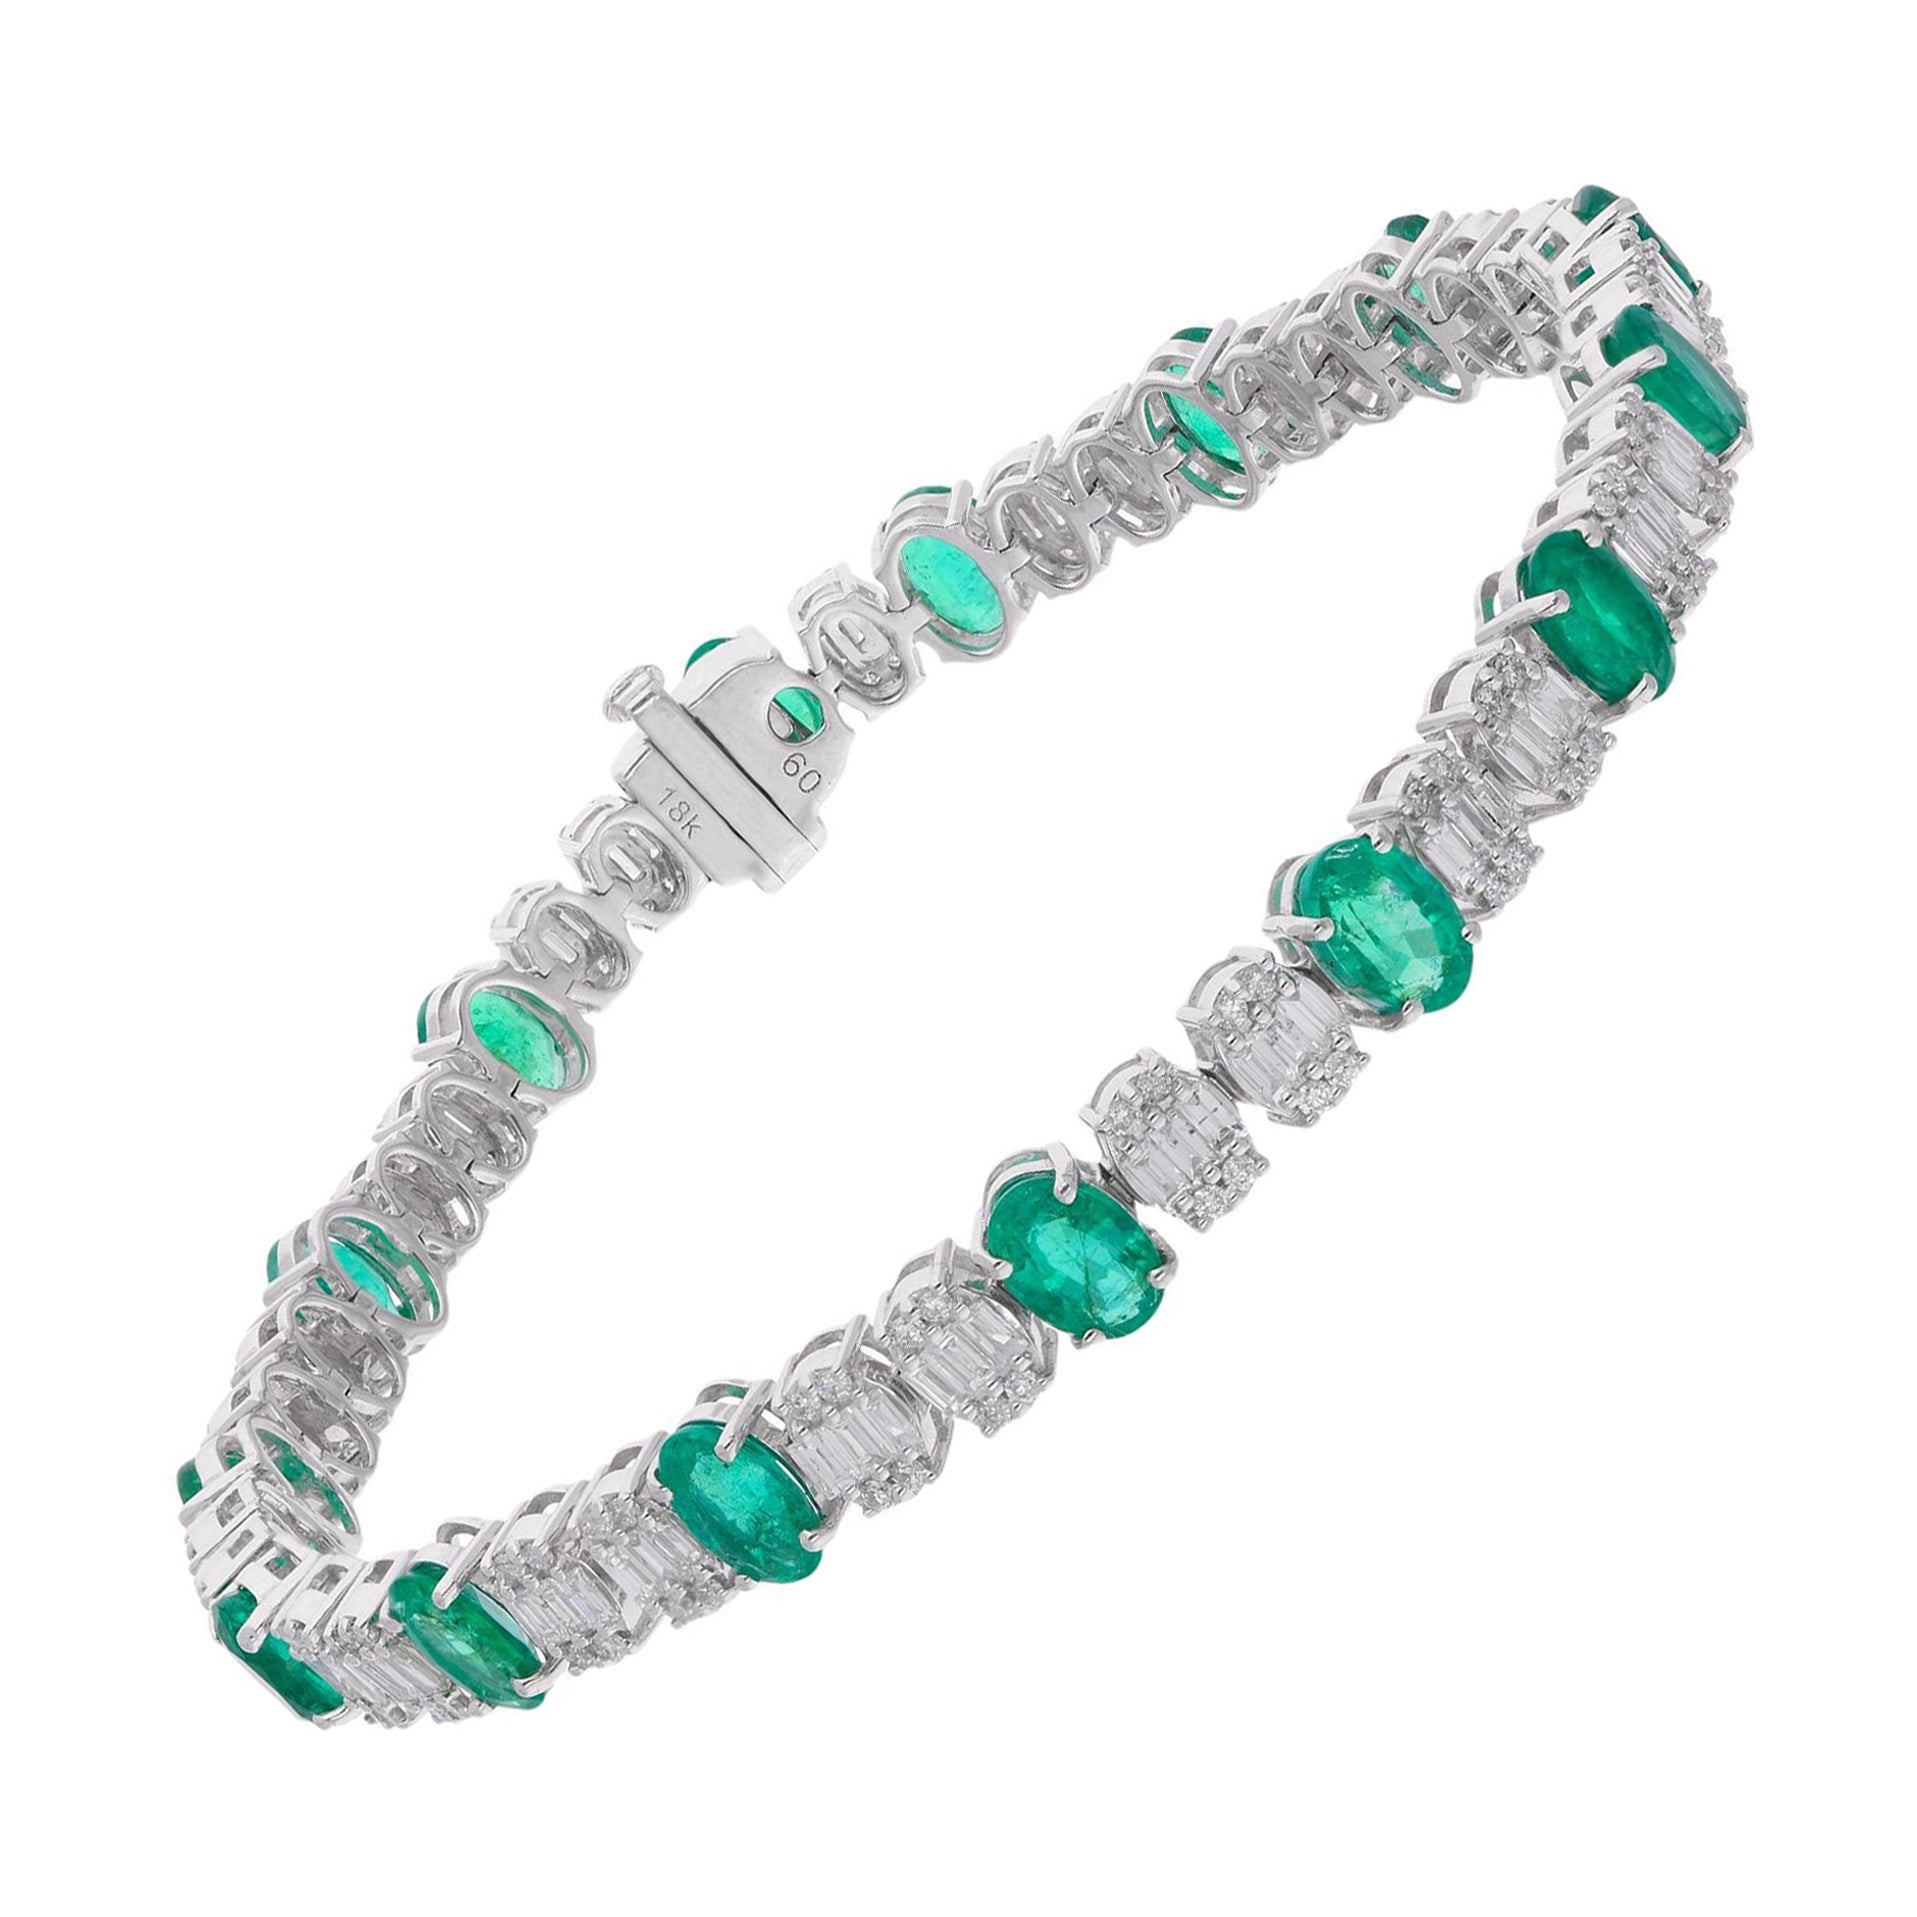 Oval Zambian Emerald Gemstone Bracelet Baguette Diamond 14 Kt White Gold Jewelry